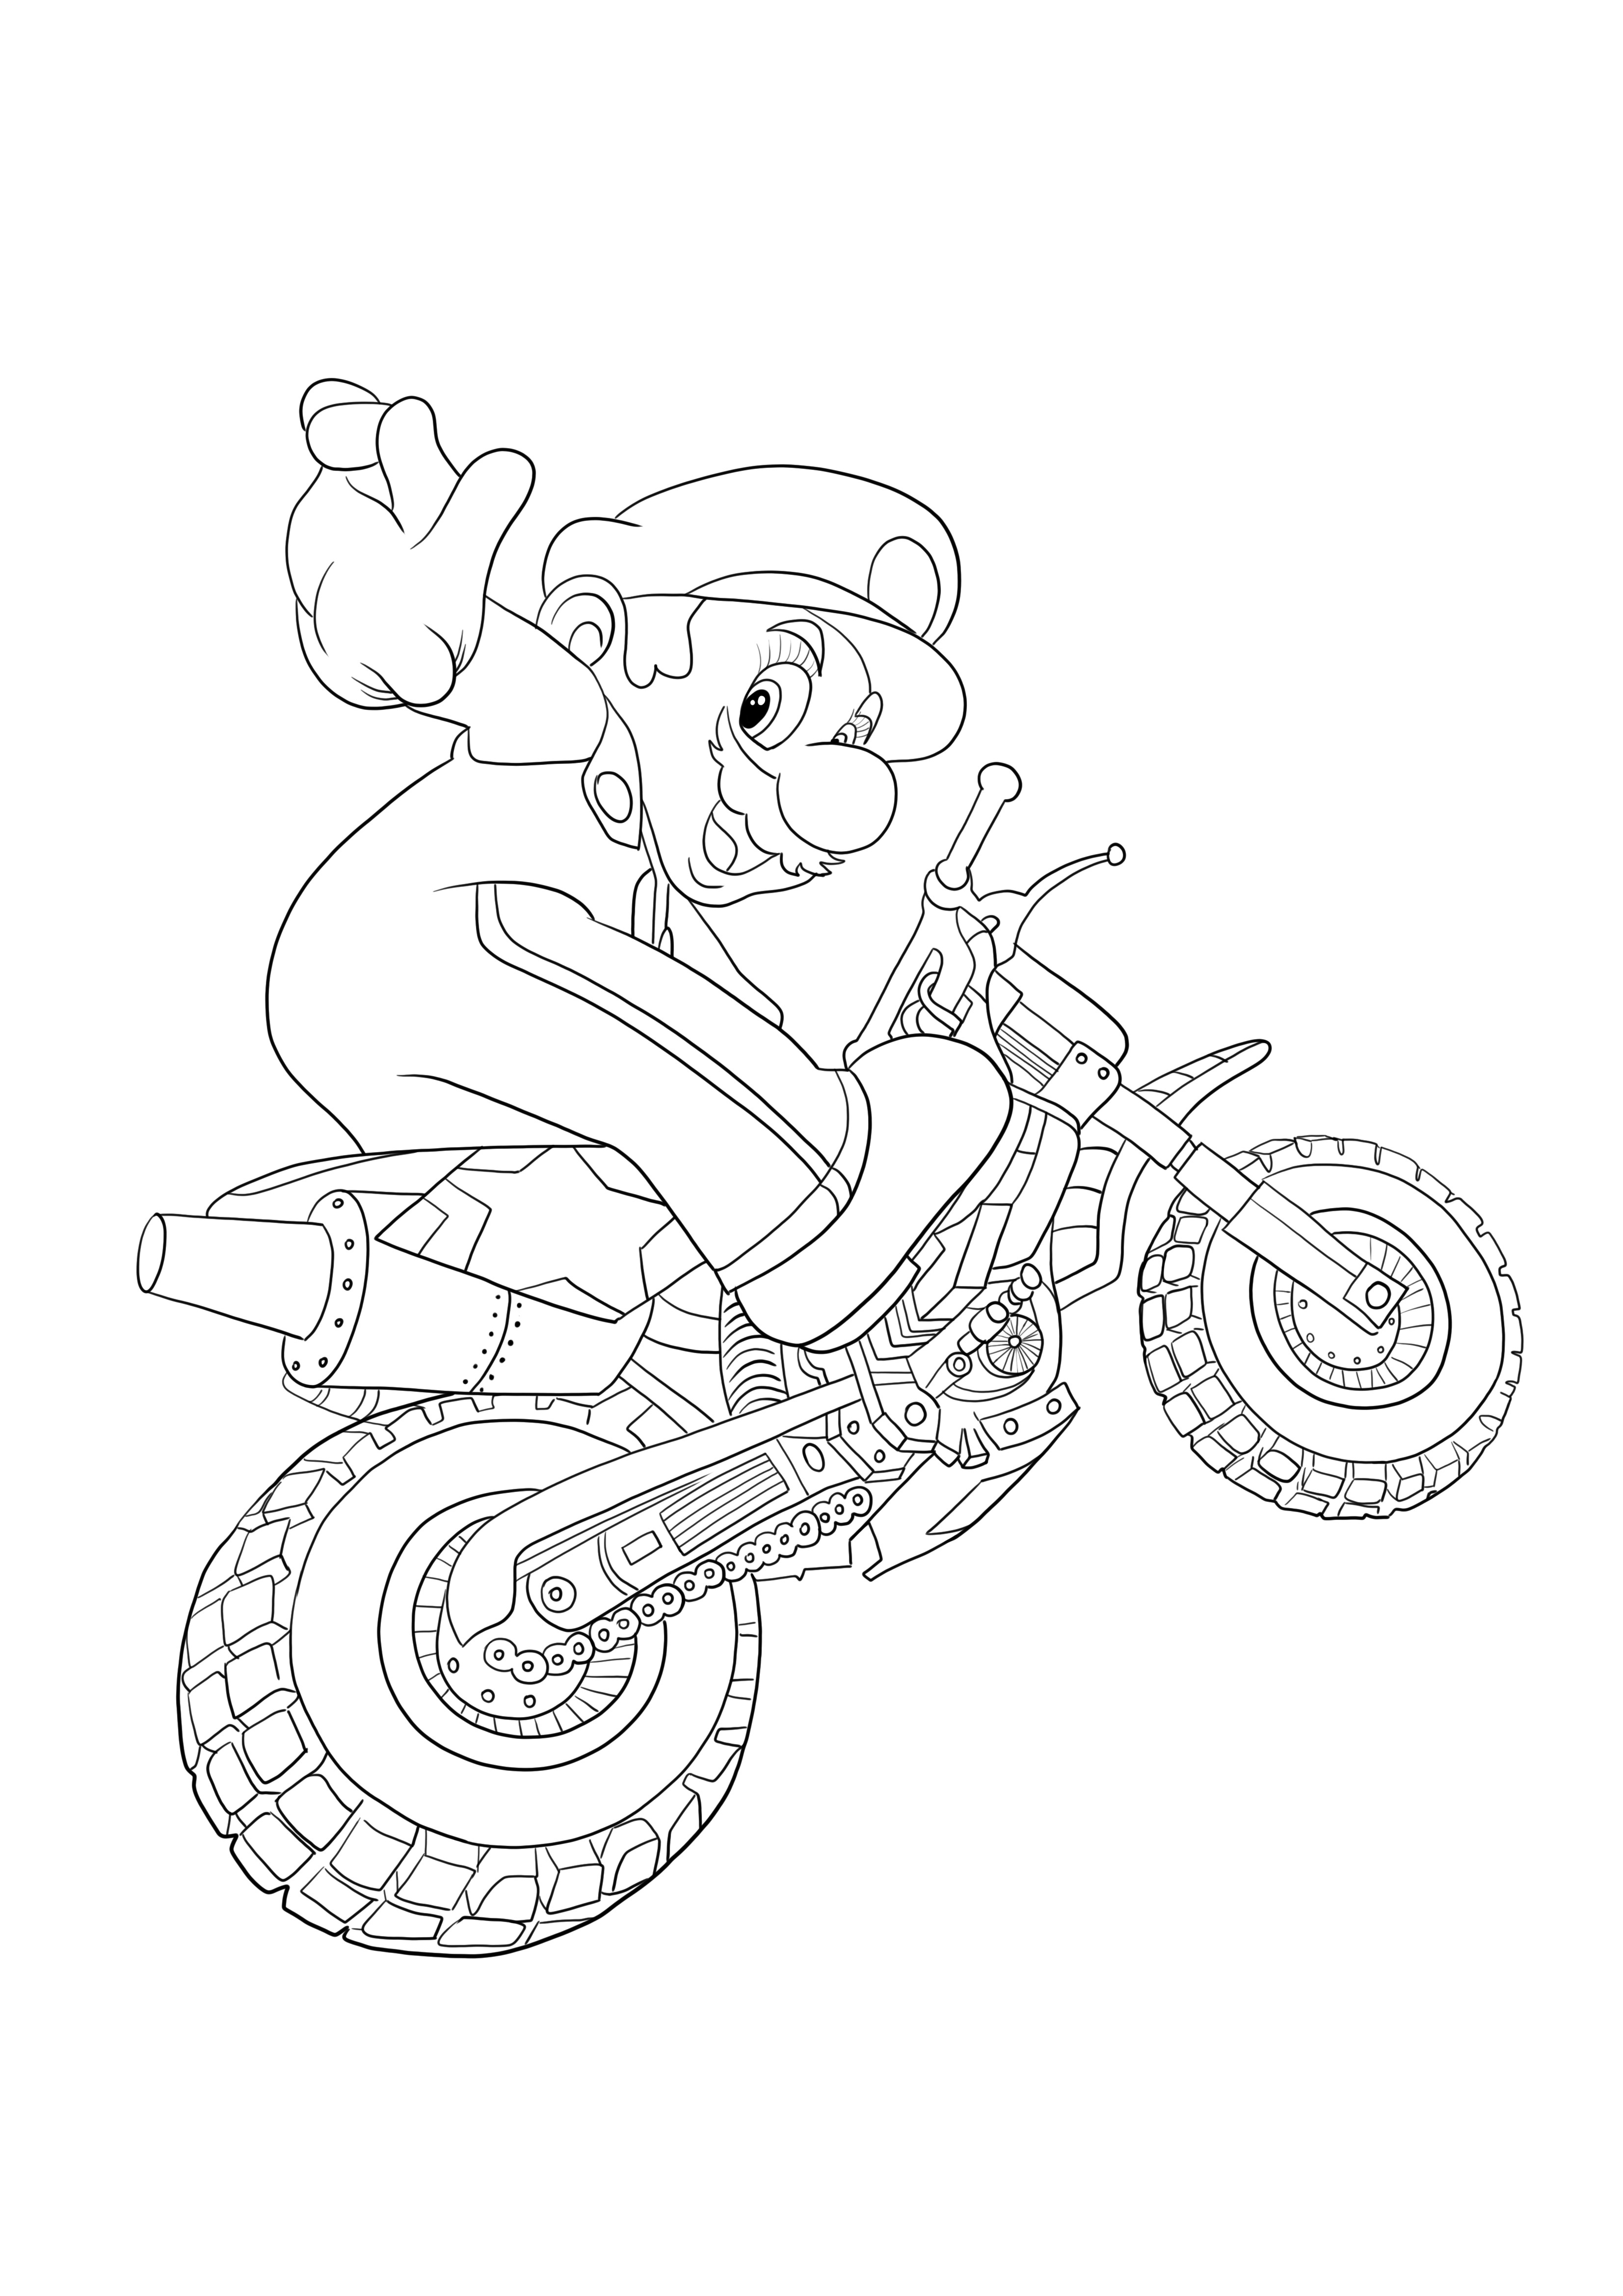 Mario anda de moto para imprimir e colorir gratuitamente